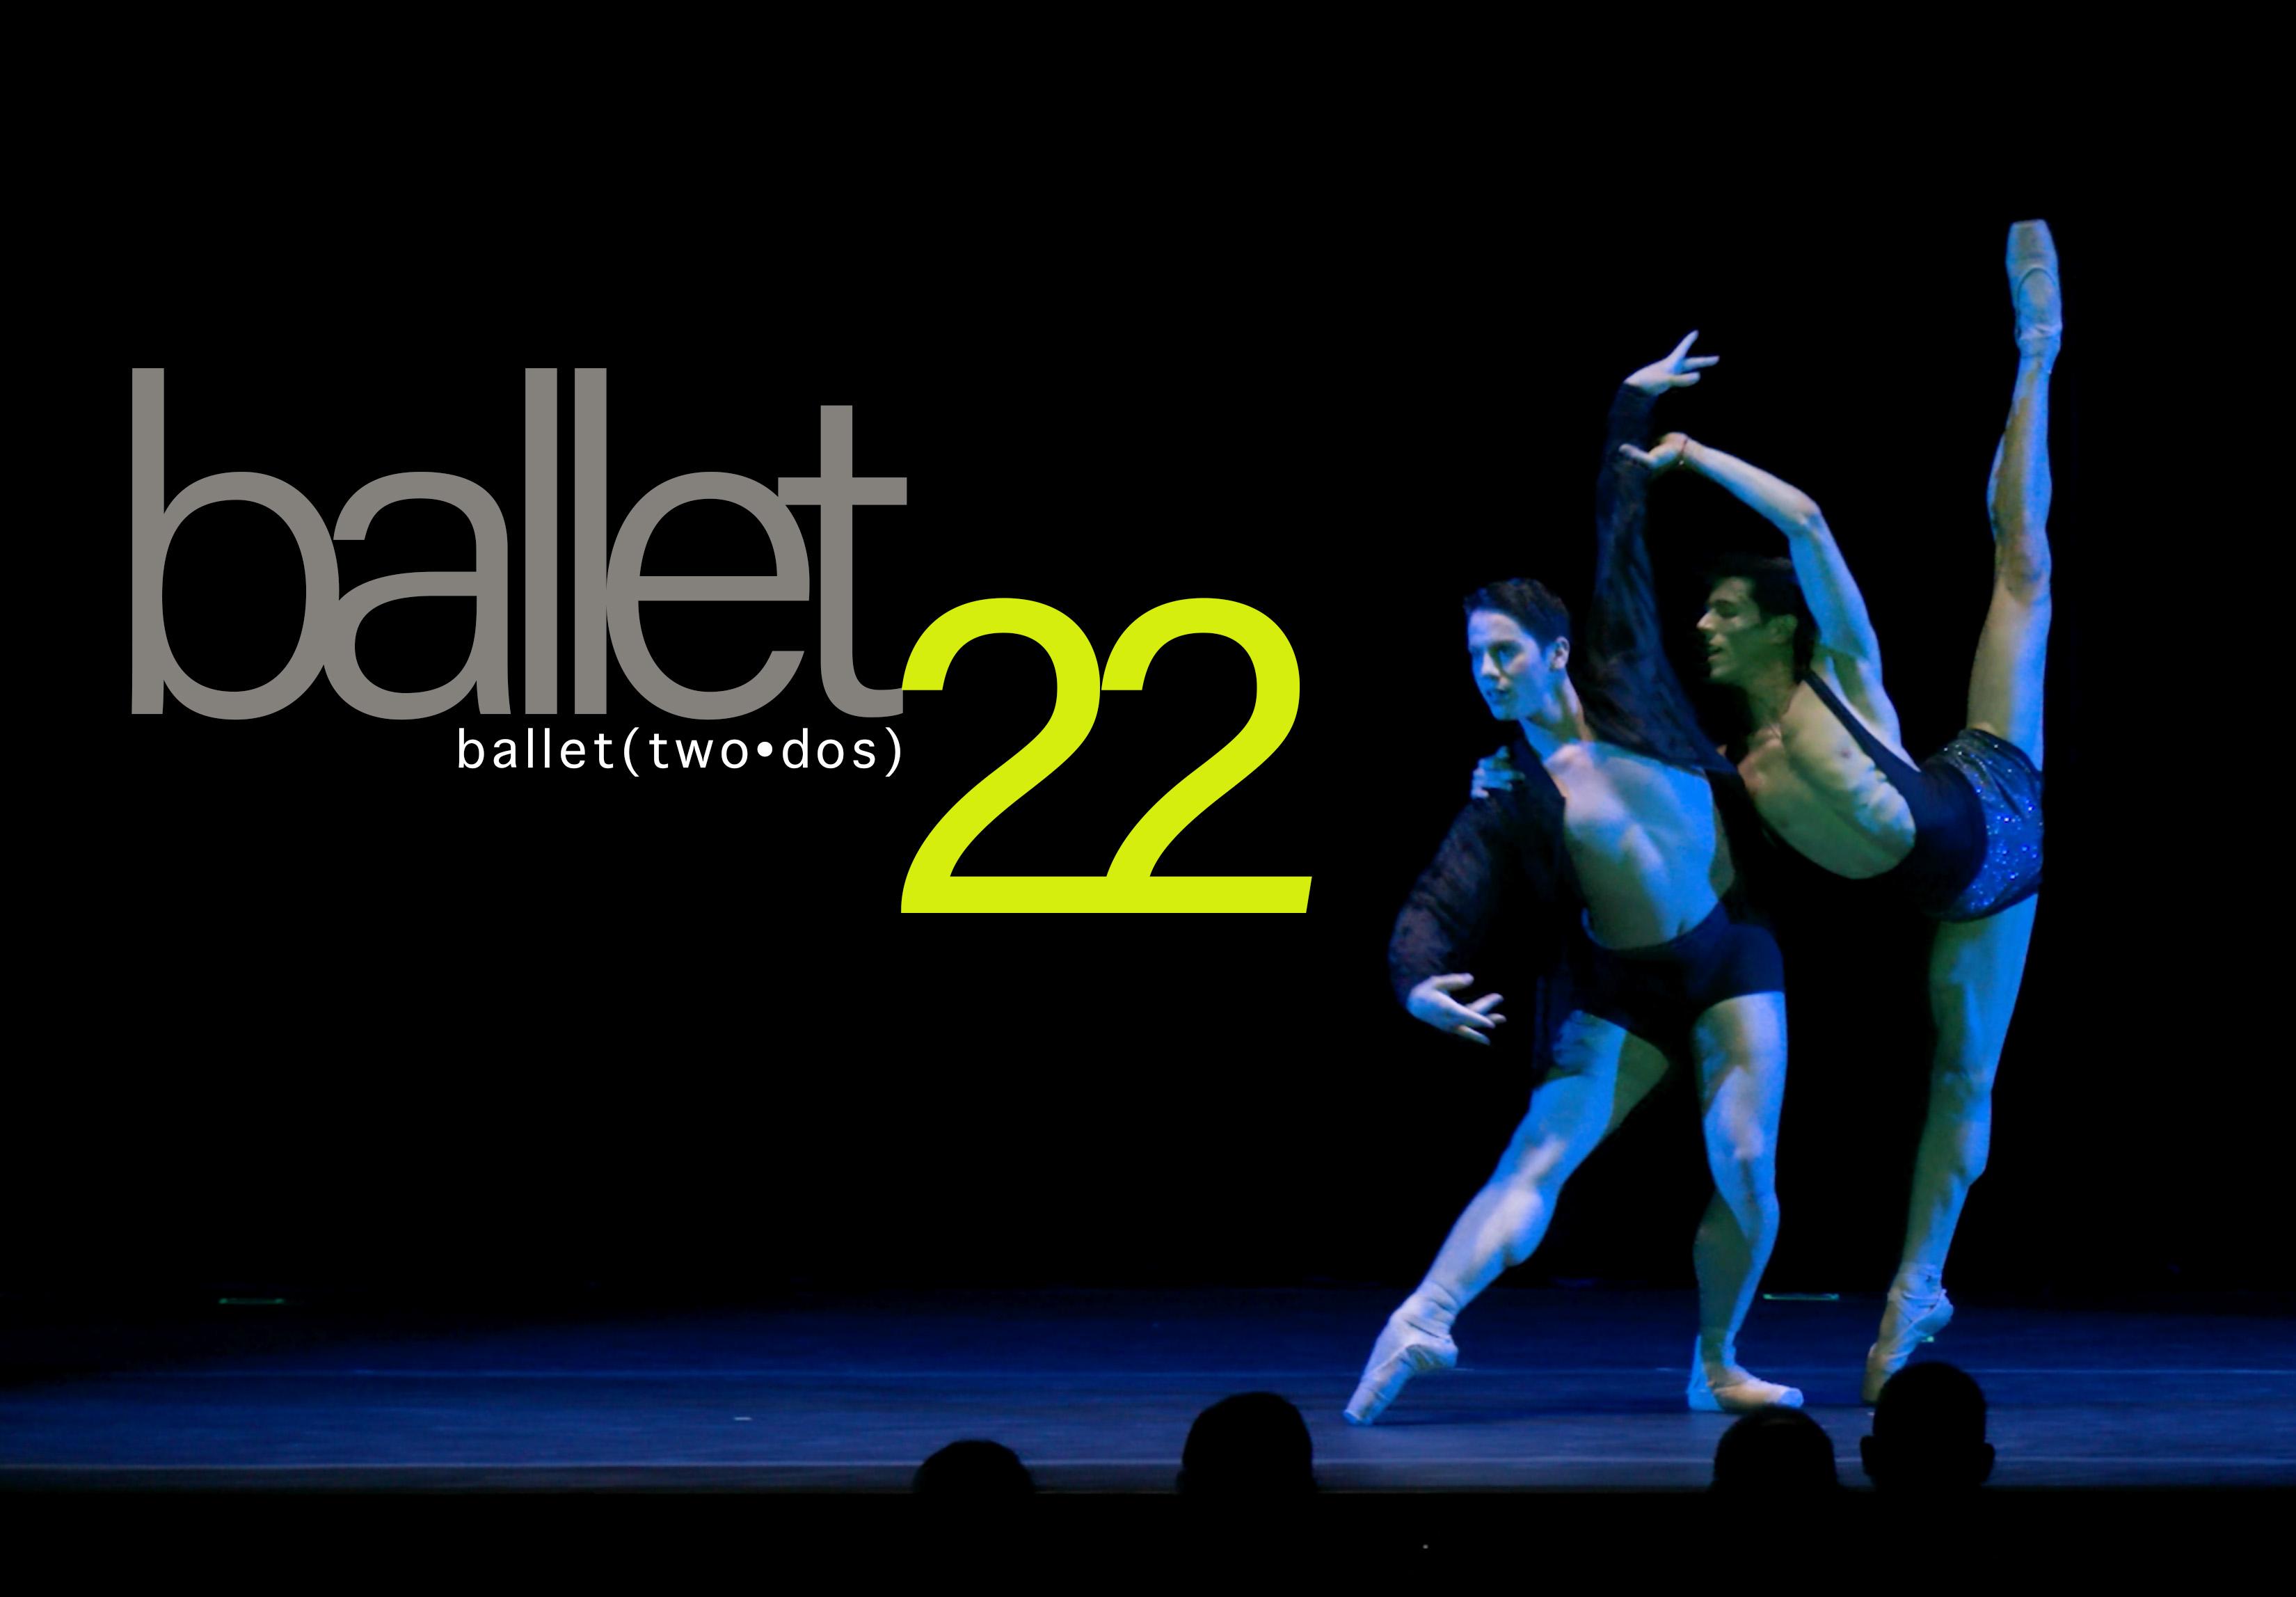 Ballet22